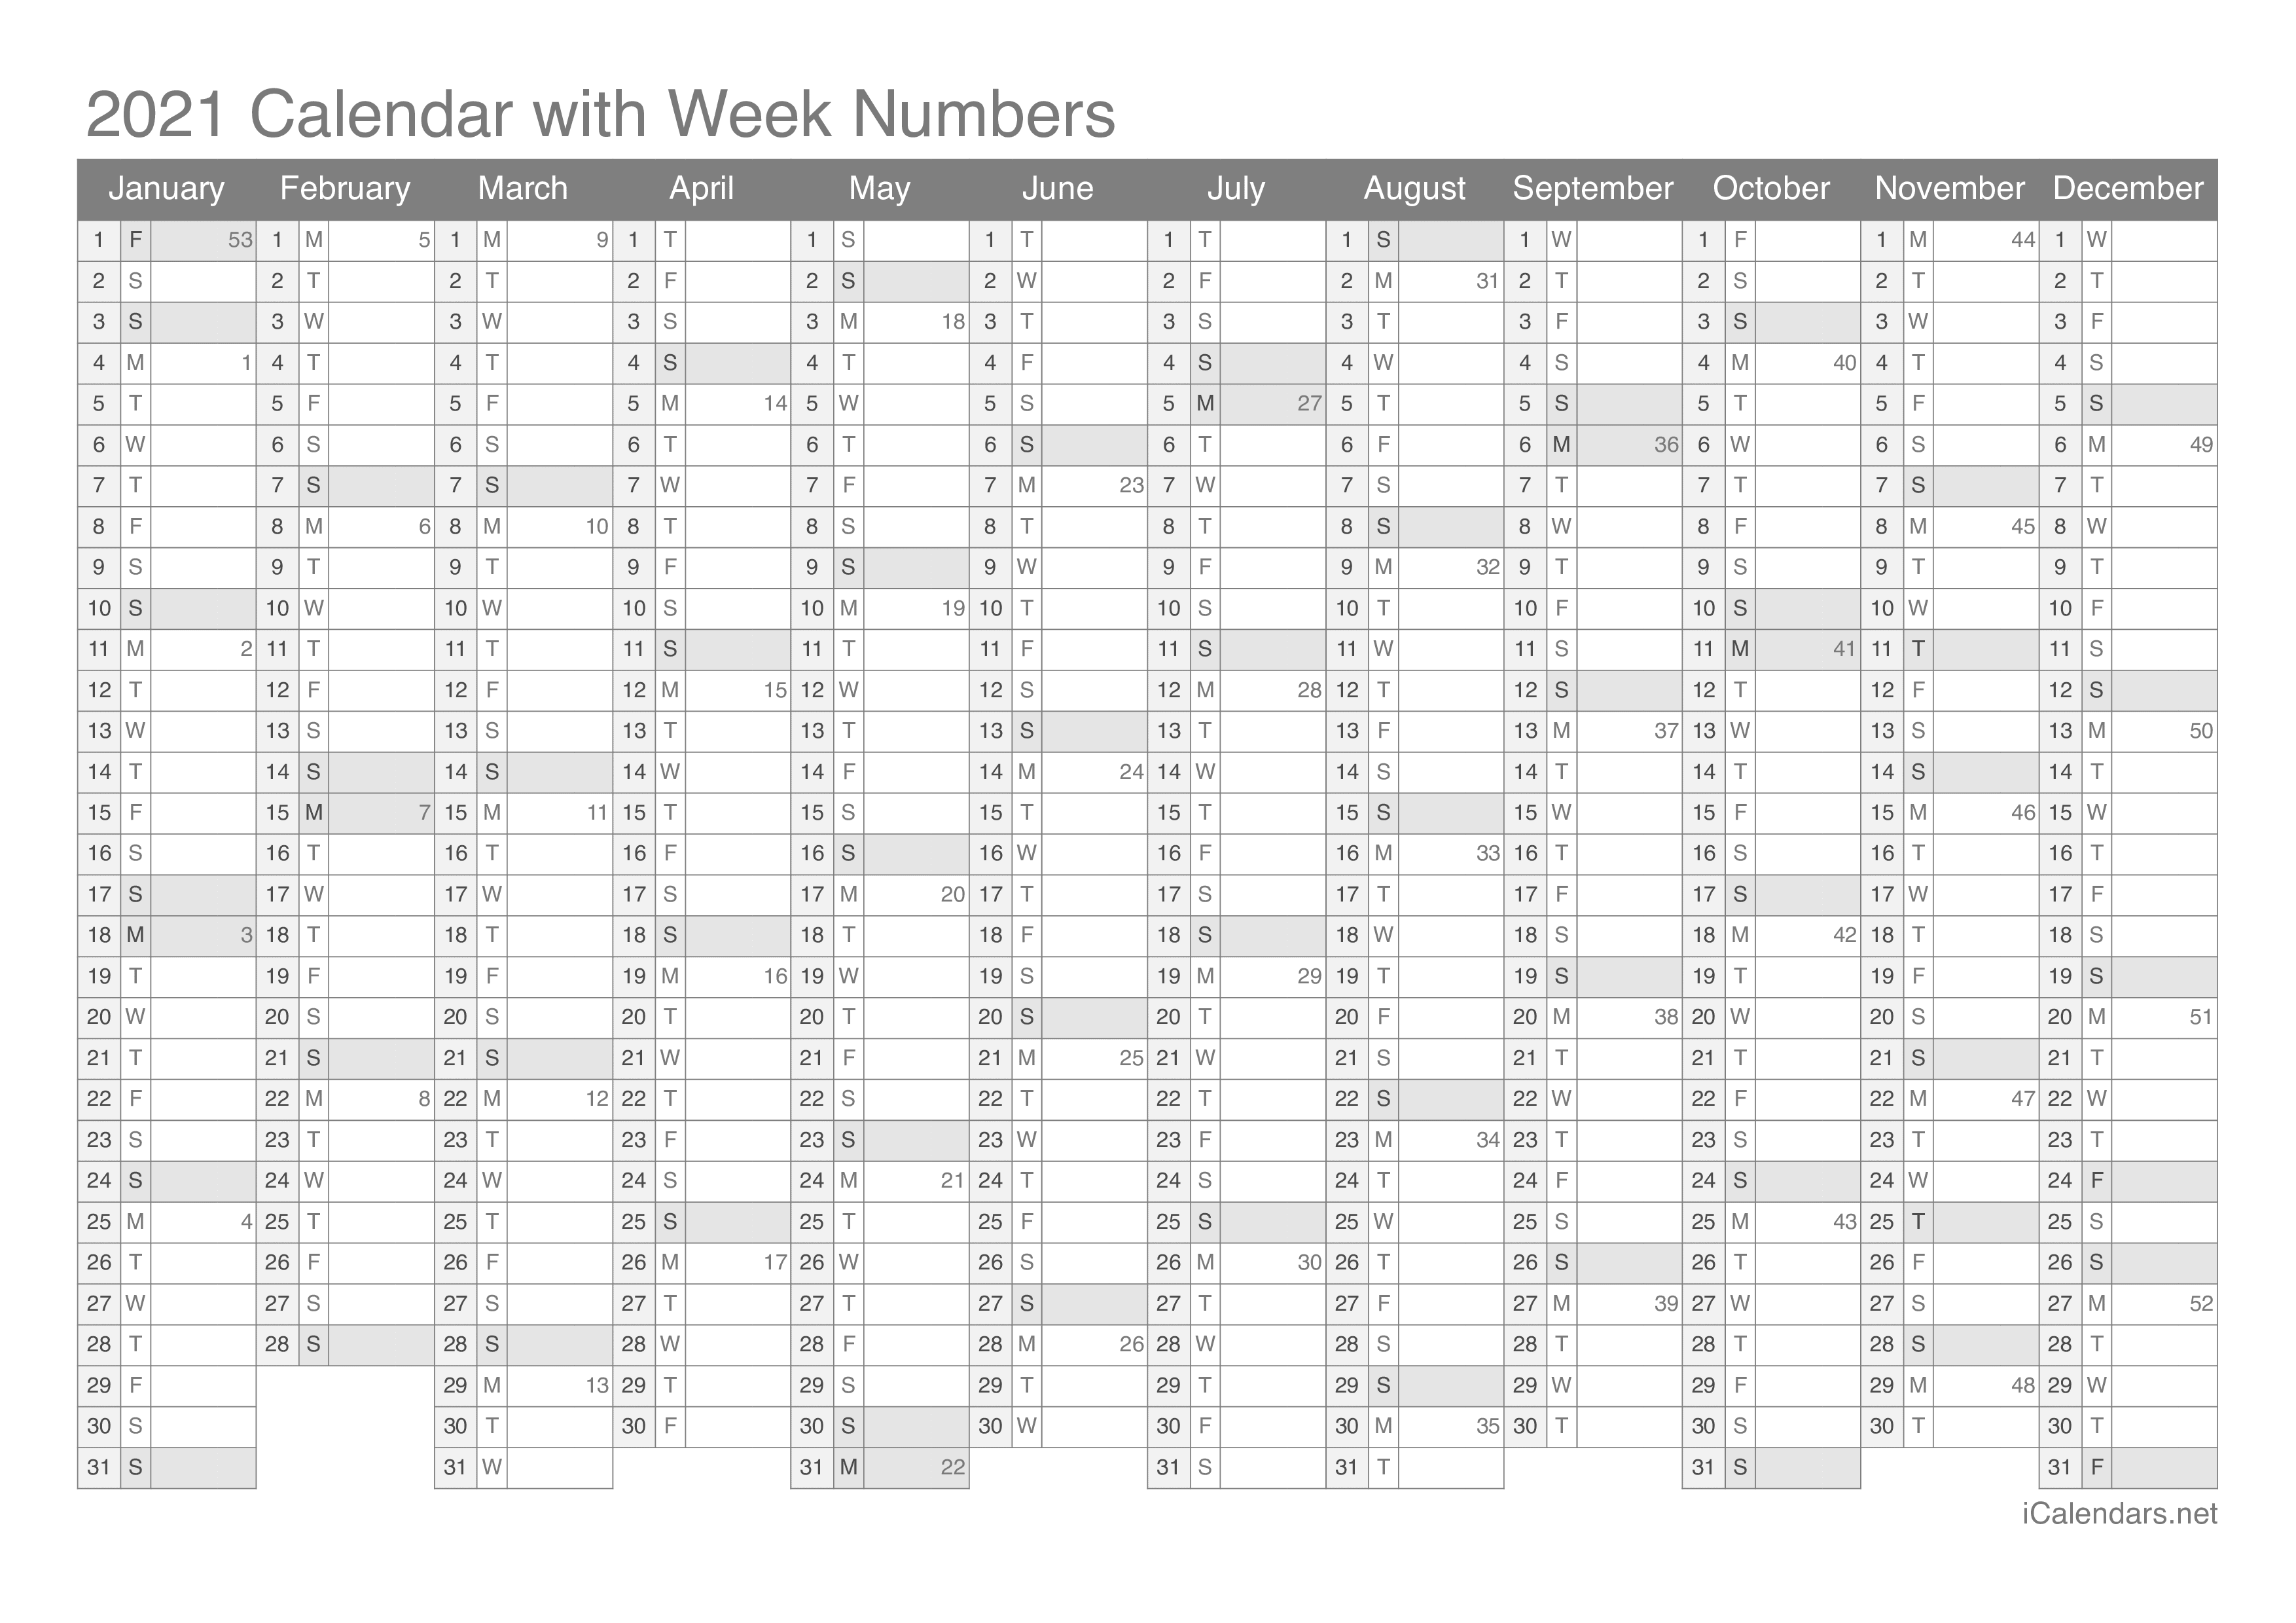 2021 Calendar with week numbers